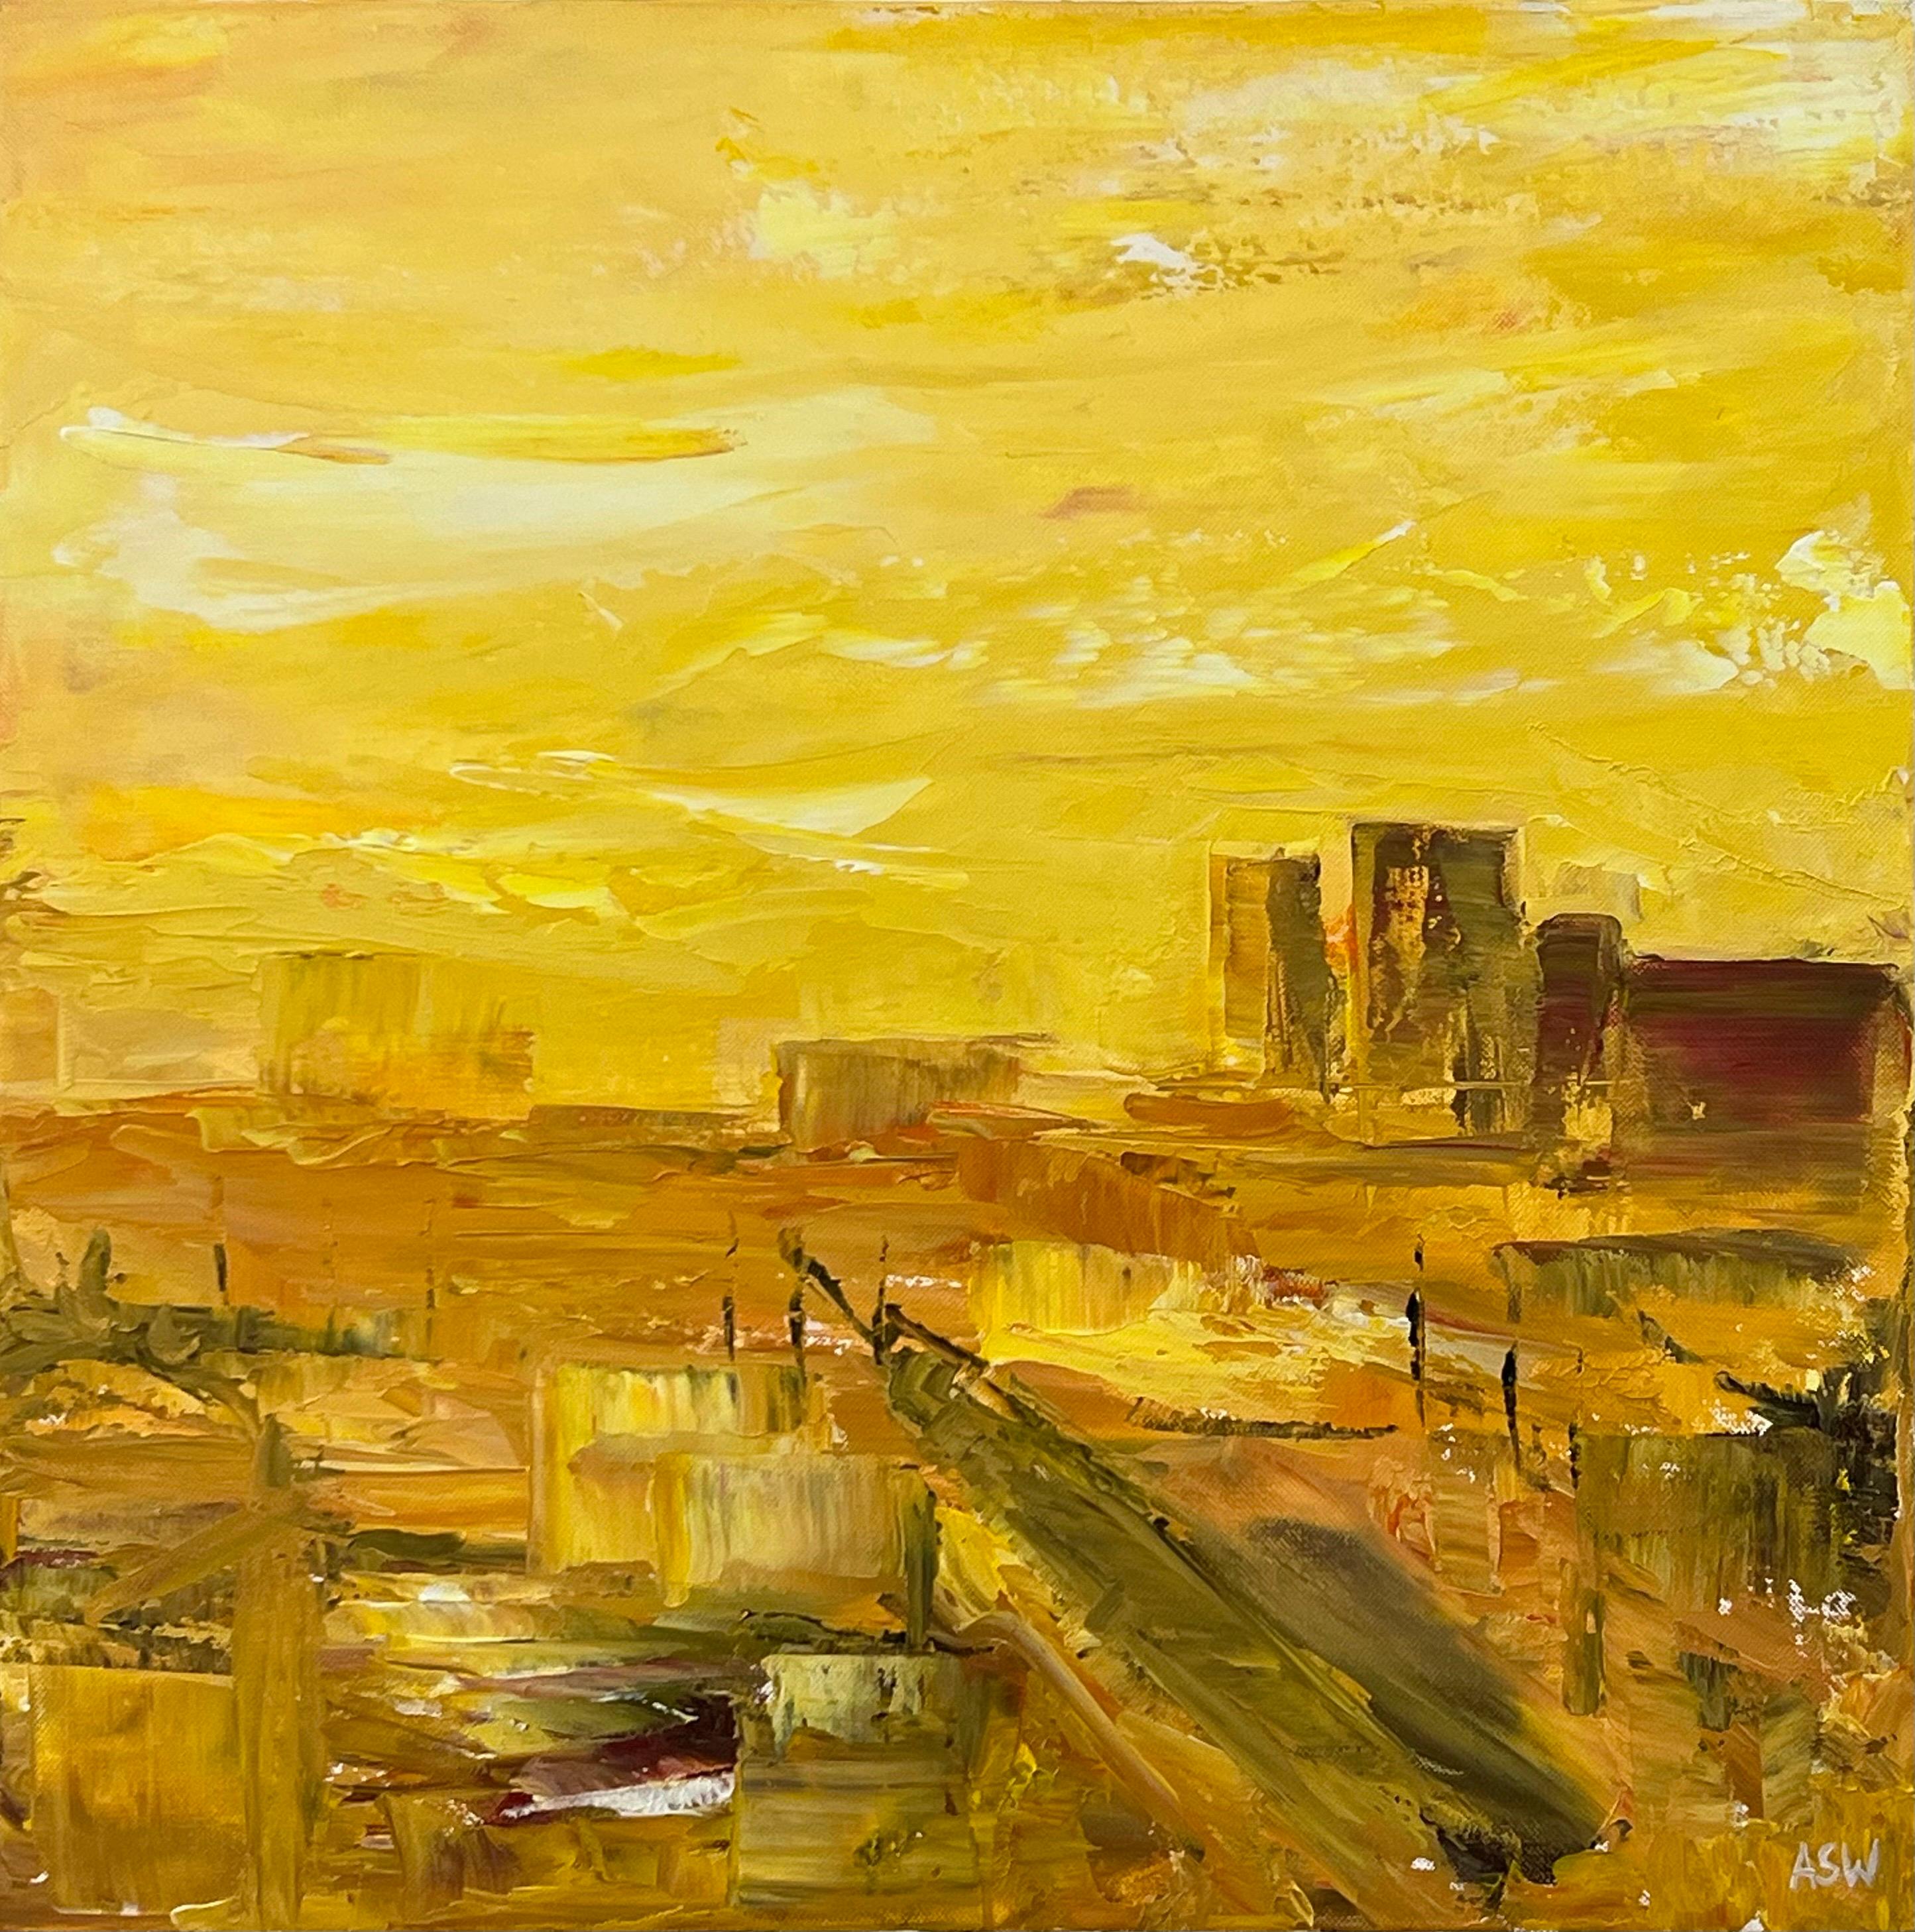 Paisaje abstracto amarillo dorado de Los Ángeles pintado por un artista contemporáneo